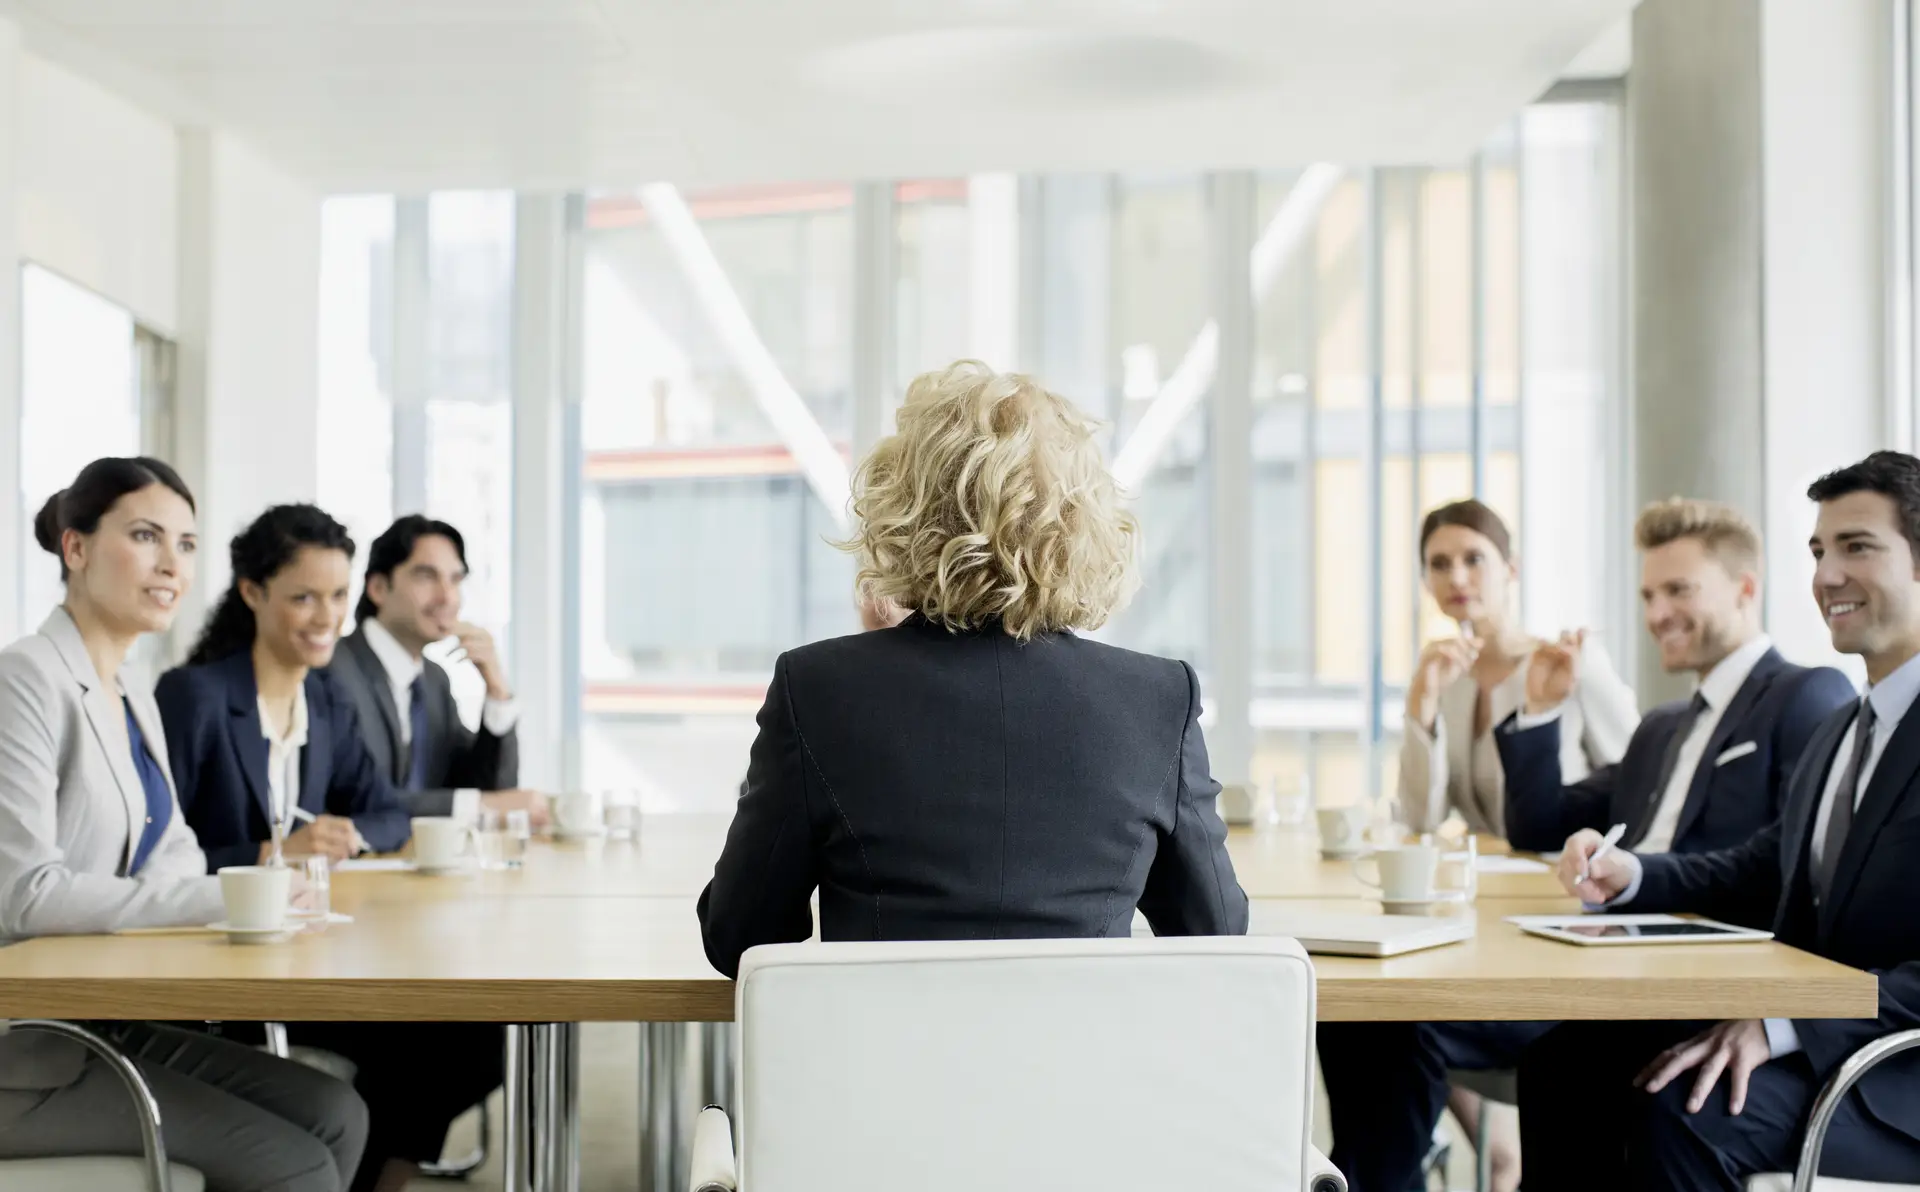 As mulheres ganharam terreno nos conselhos de administração das empresas, mas maioritariamente em funções não executivas